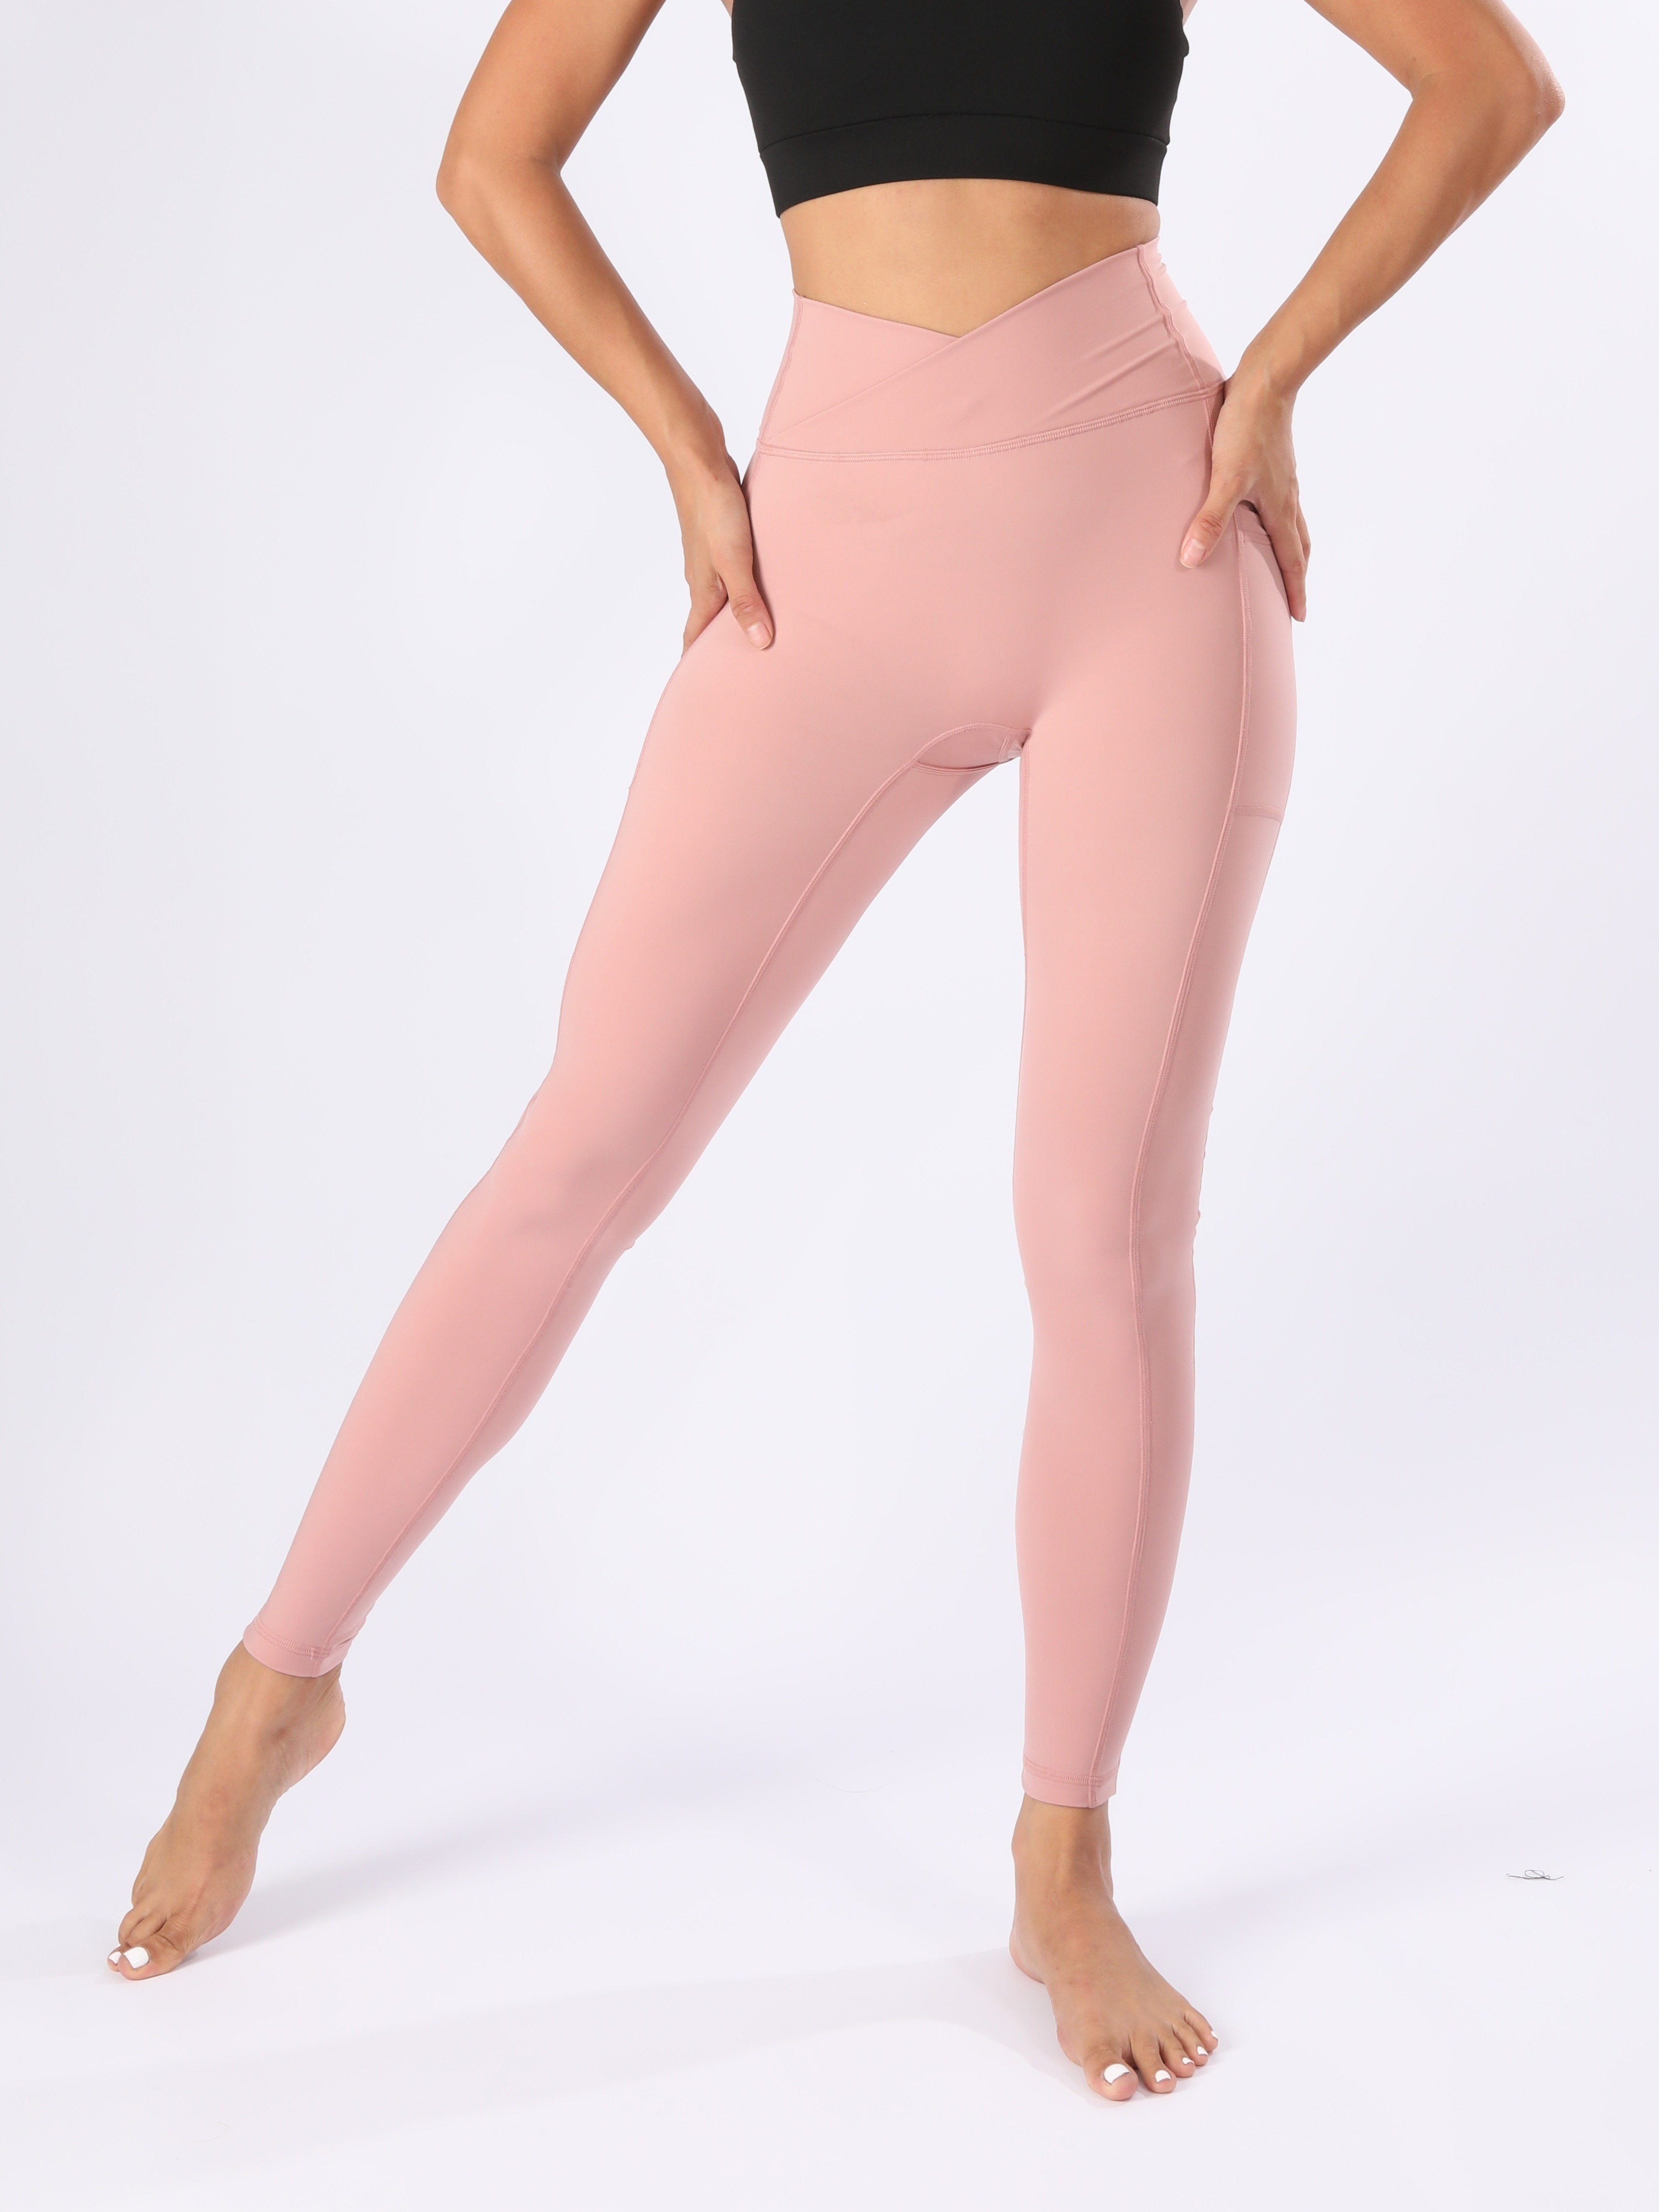 Hot Pink High Waisted Leggings - Pocket Leggings - Active Legging - Lulus